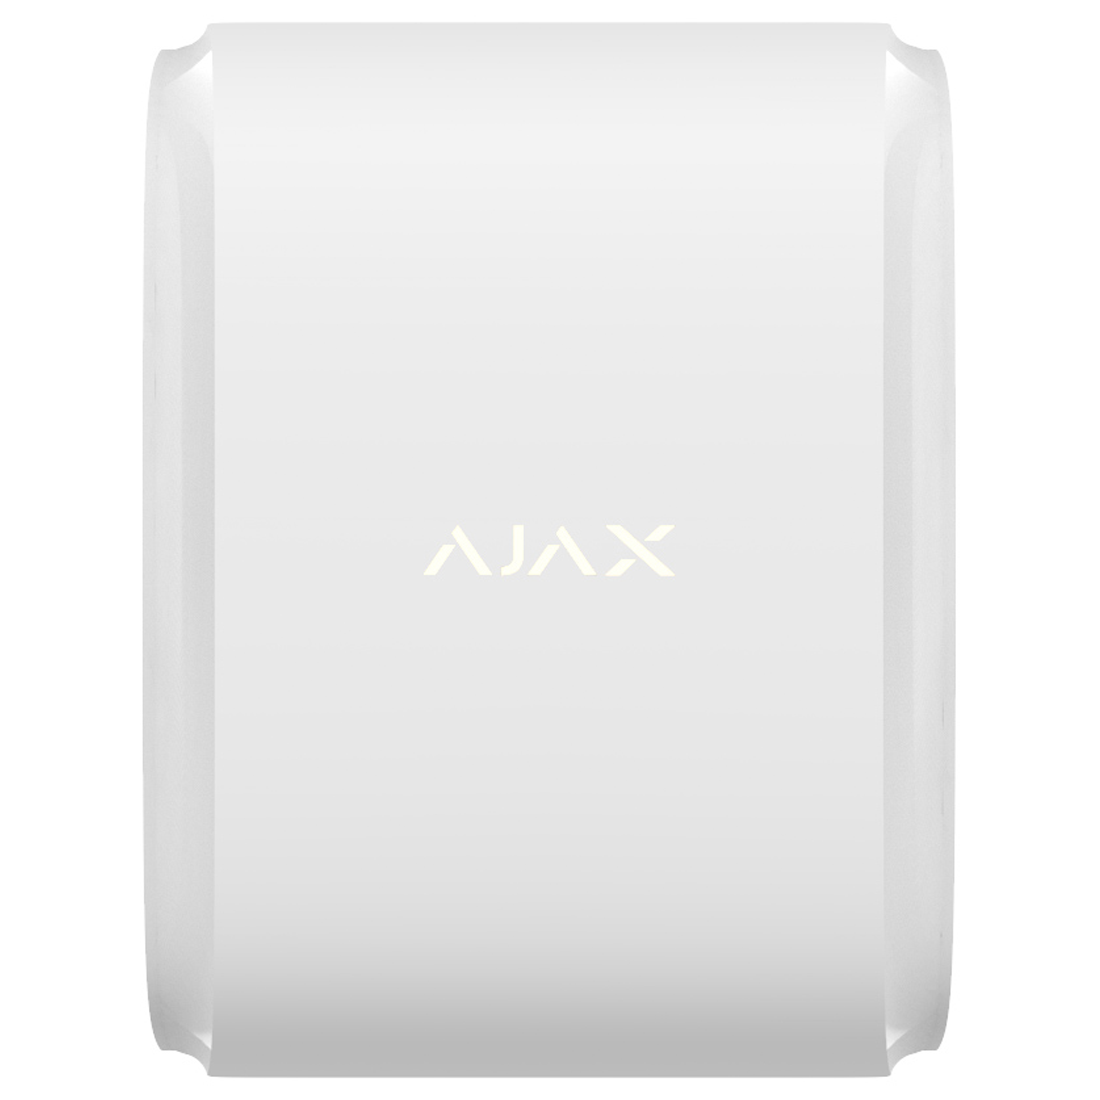 Ajax DualCurtain Outdoor Wireless Curtain PIR - White (AJA-26097)